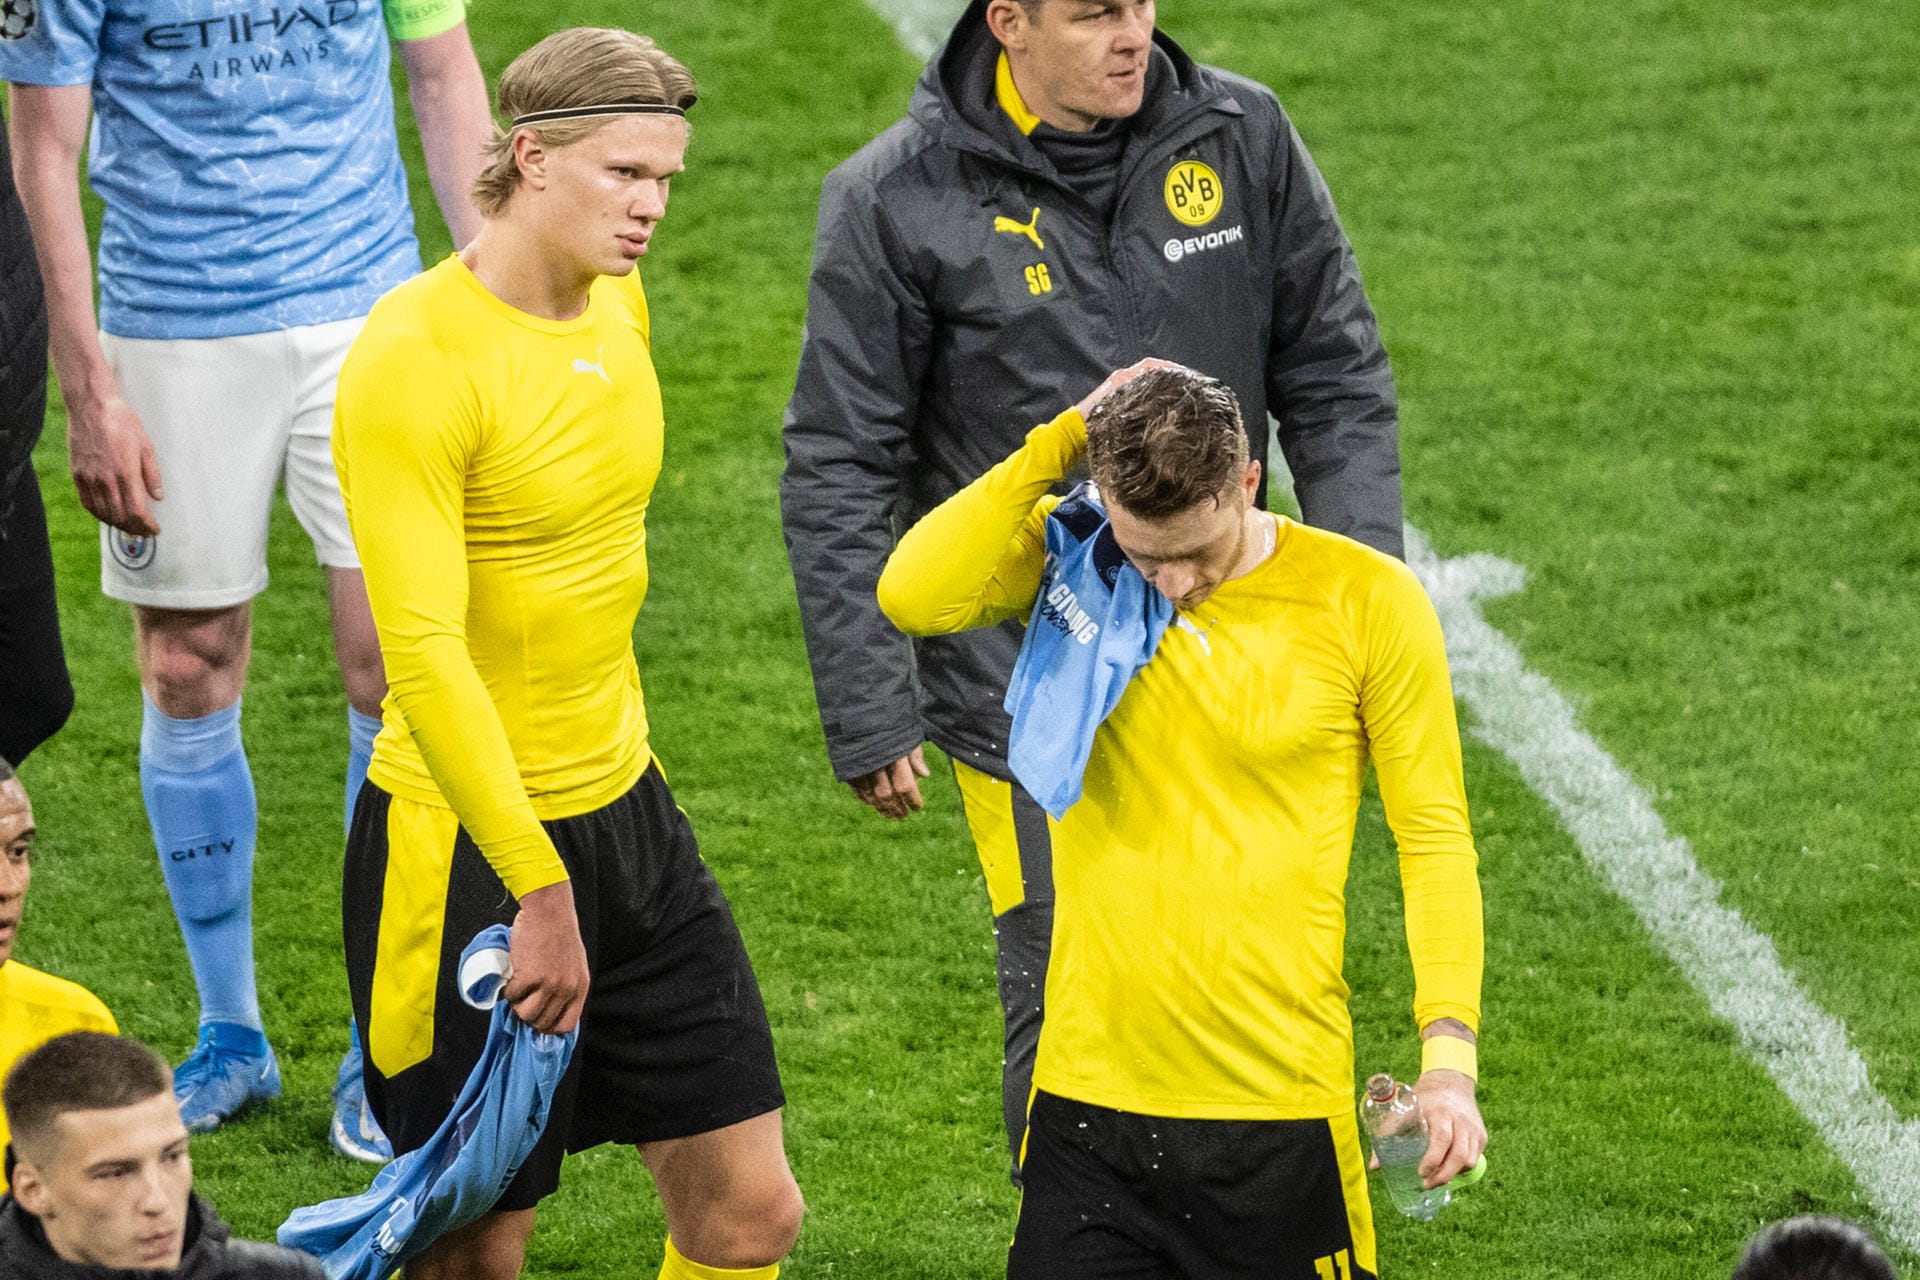 Eine Halbzeit lang konnte Borussia Dortmund auf die Sensation hoffen. Doch individuelle Fehler gegen ein teils drückend überlegenes Manchester City verhinderten das Weiterkommen ins Champions-League-Halbfinale. Die Einzelkritik zur 1:2-Niederlage des BVB.